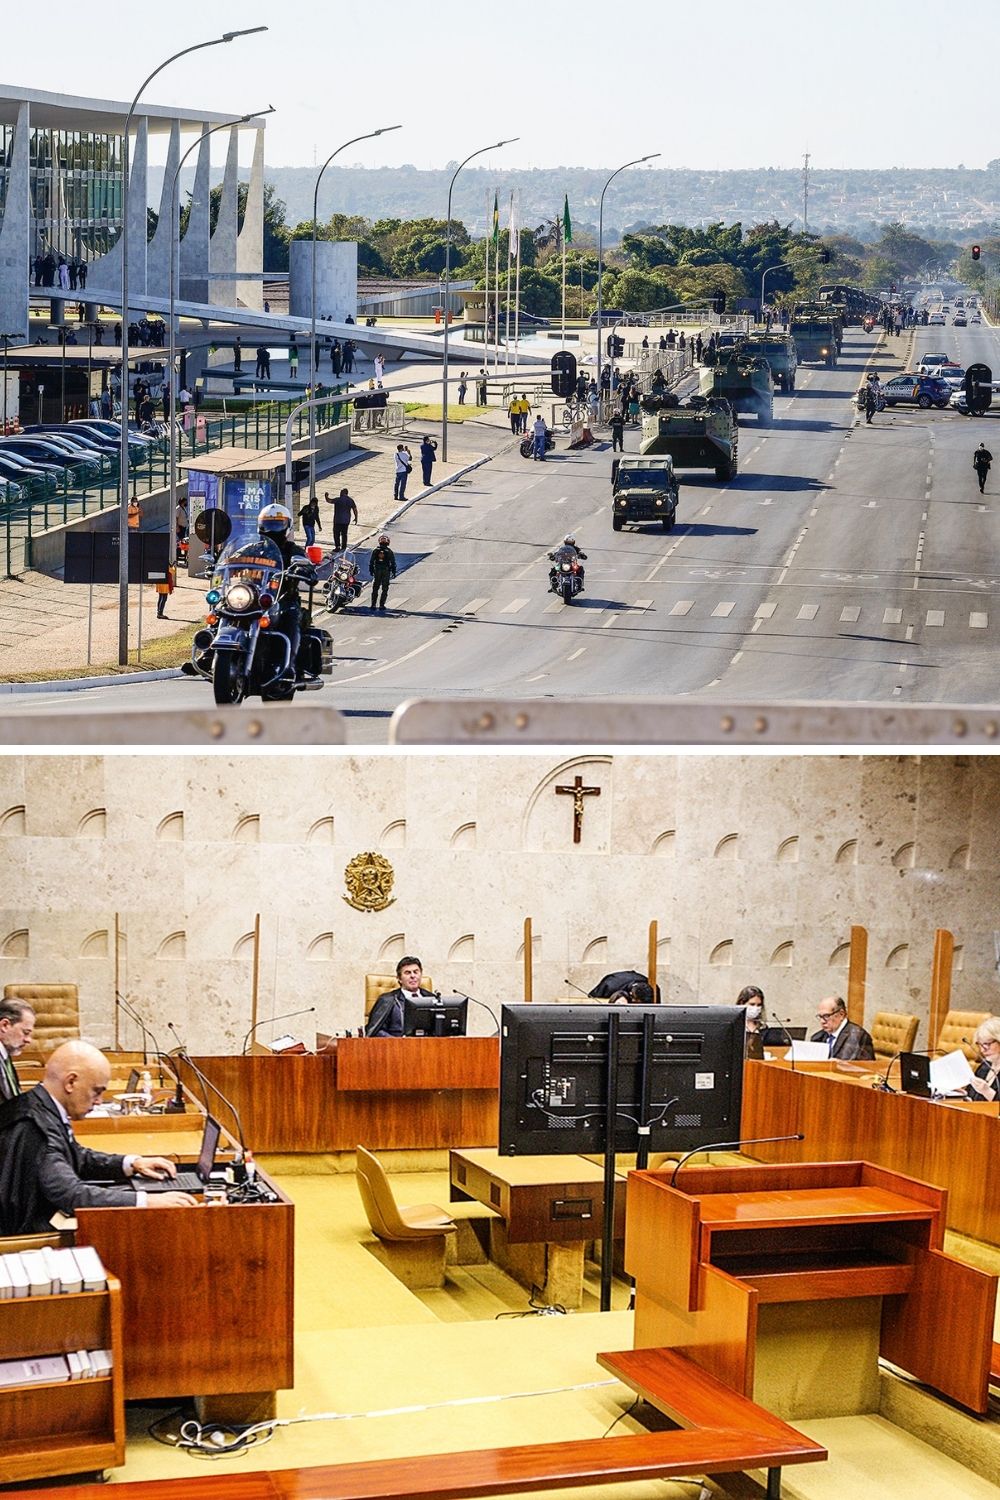 CONFRONTO PERMANENTE - Desfile de tanques e sessão do STF: anteparo legal contra arroubos antidemocráticos -